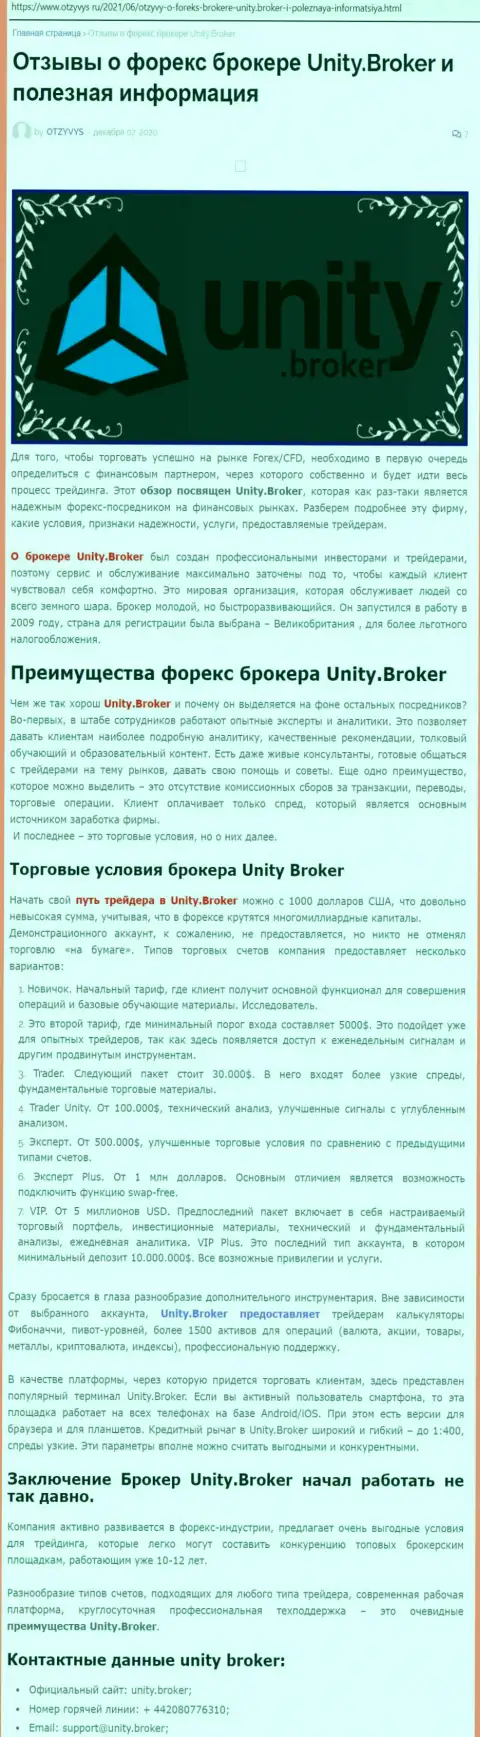 Статья о forex-брокерской организации Unity Broker на сайте отзывус ру